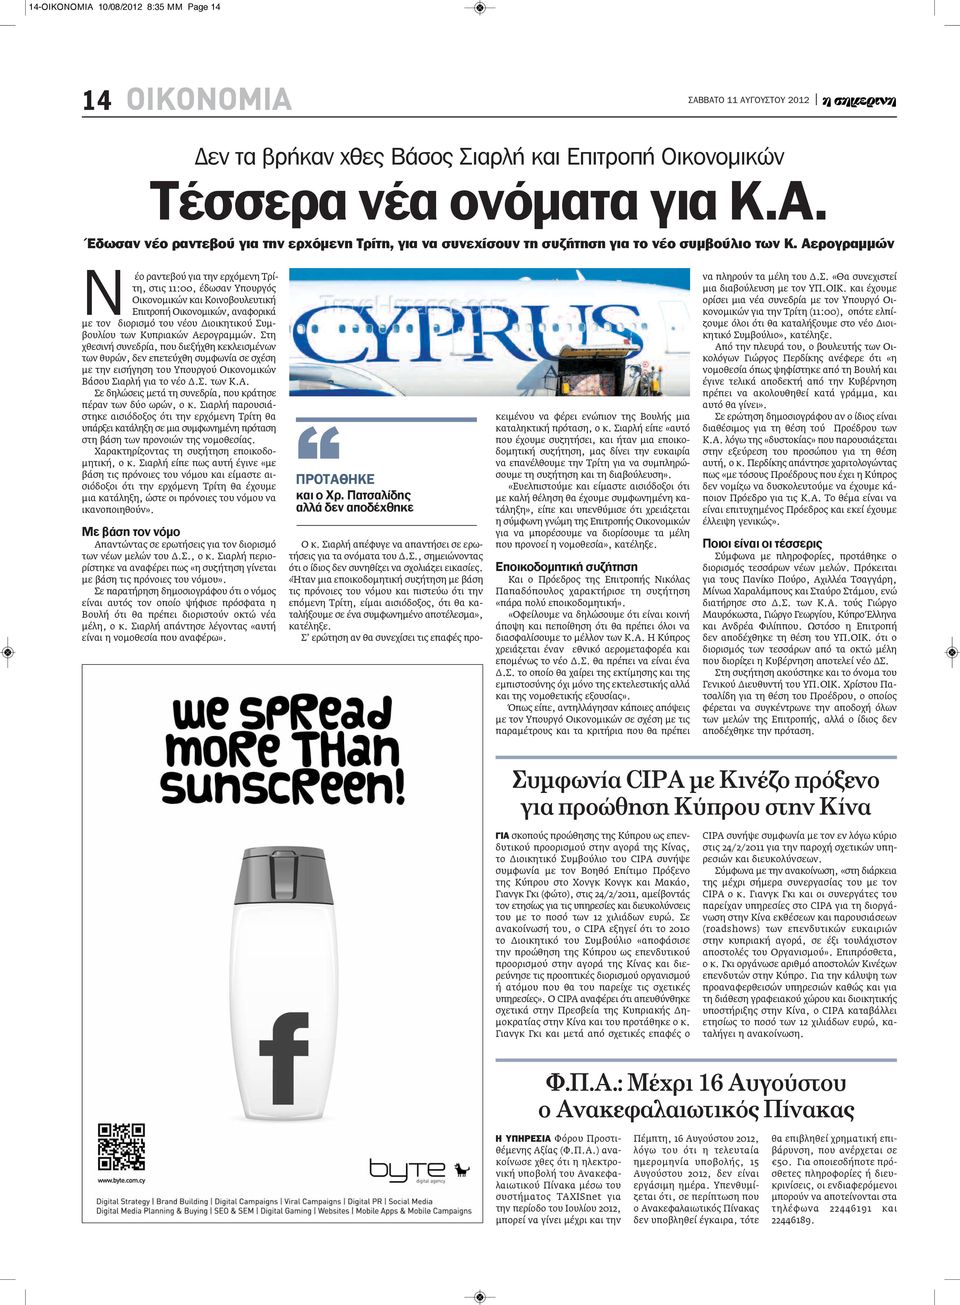 Κυπριακών Αερογραμμών. Στη χθεσινή συνεδρία, που διεξήχθη κεκλεισμένων των θυρών, δεν επετεύχθη συμφωνία σε σχέση με την εισήγηση του Υπουργού Οικονομικών Βάσου Σιαρλή για το νέο Δ.Σ. των Κ.Α. Σε δηλώσεις μετά τη συνεδρία, που κράτησε πέραν των δύο ωρών, ο κ.